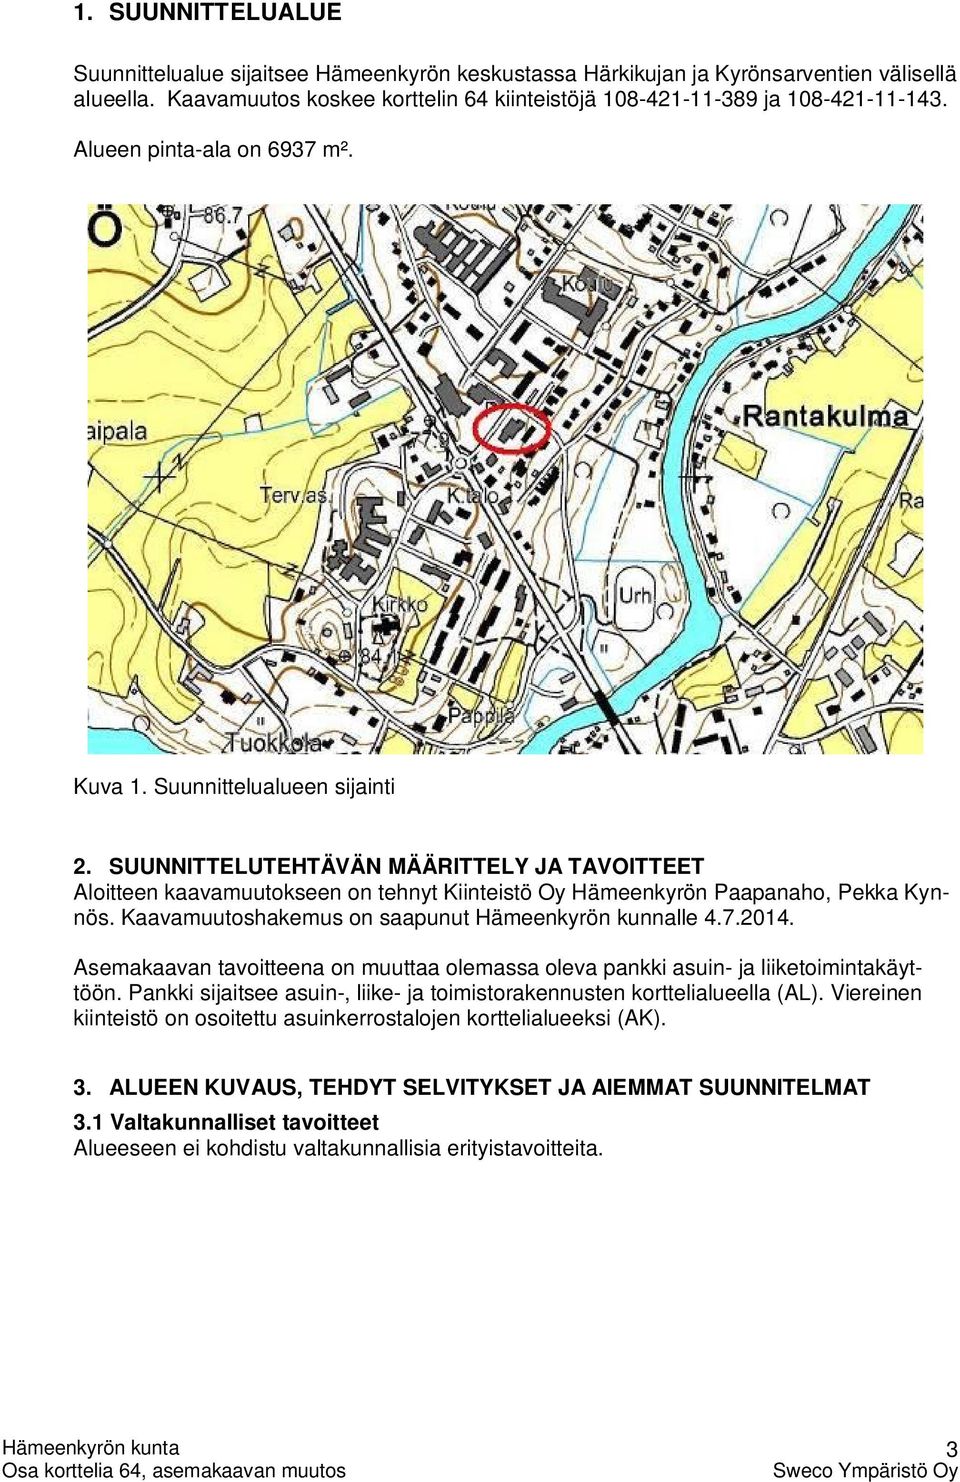 Kaavamuutoshakemus on saapunut Hämeenkyrön kunnalle 4.7.2014. Asemakaavan tavoitteena on muuttaa olemassa oleva pankki asuin- ja liiketoimintakäyttöön.